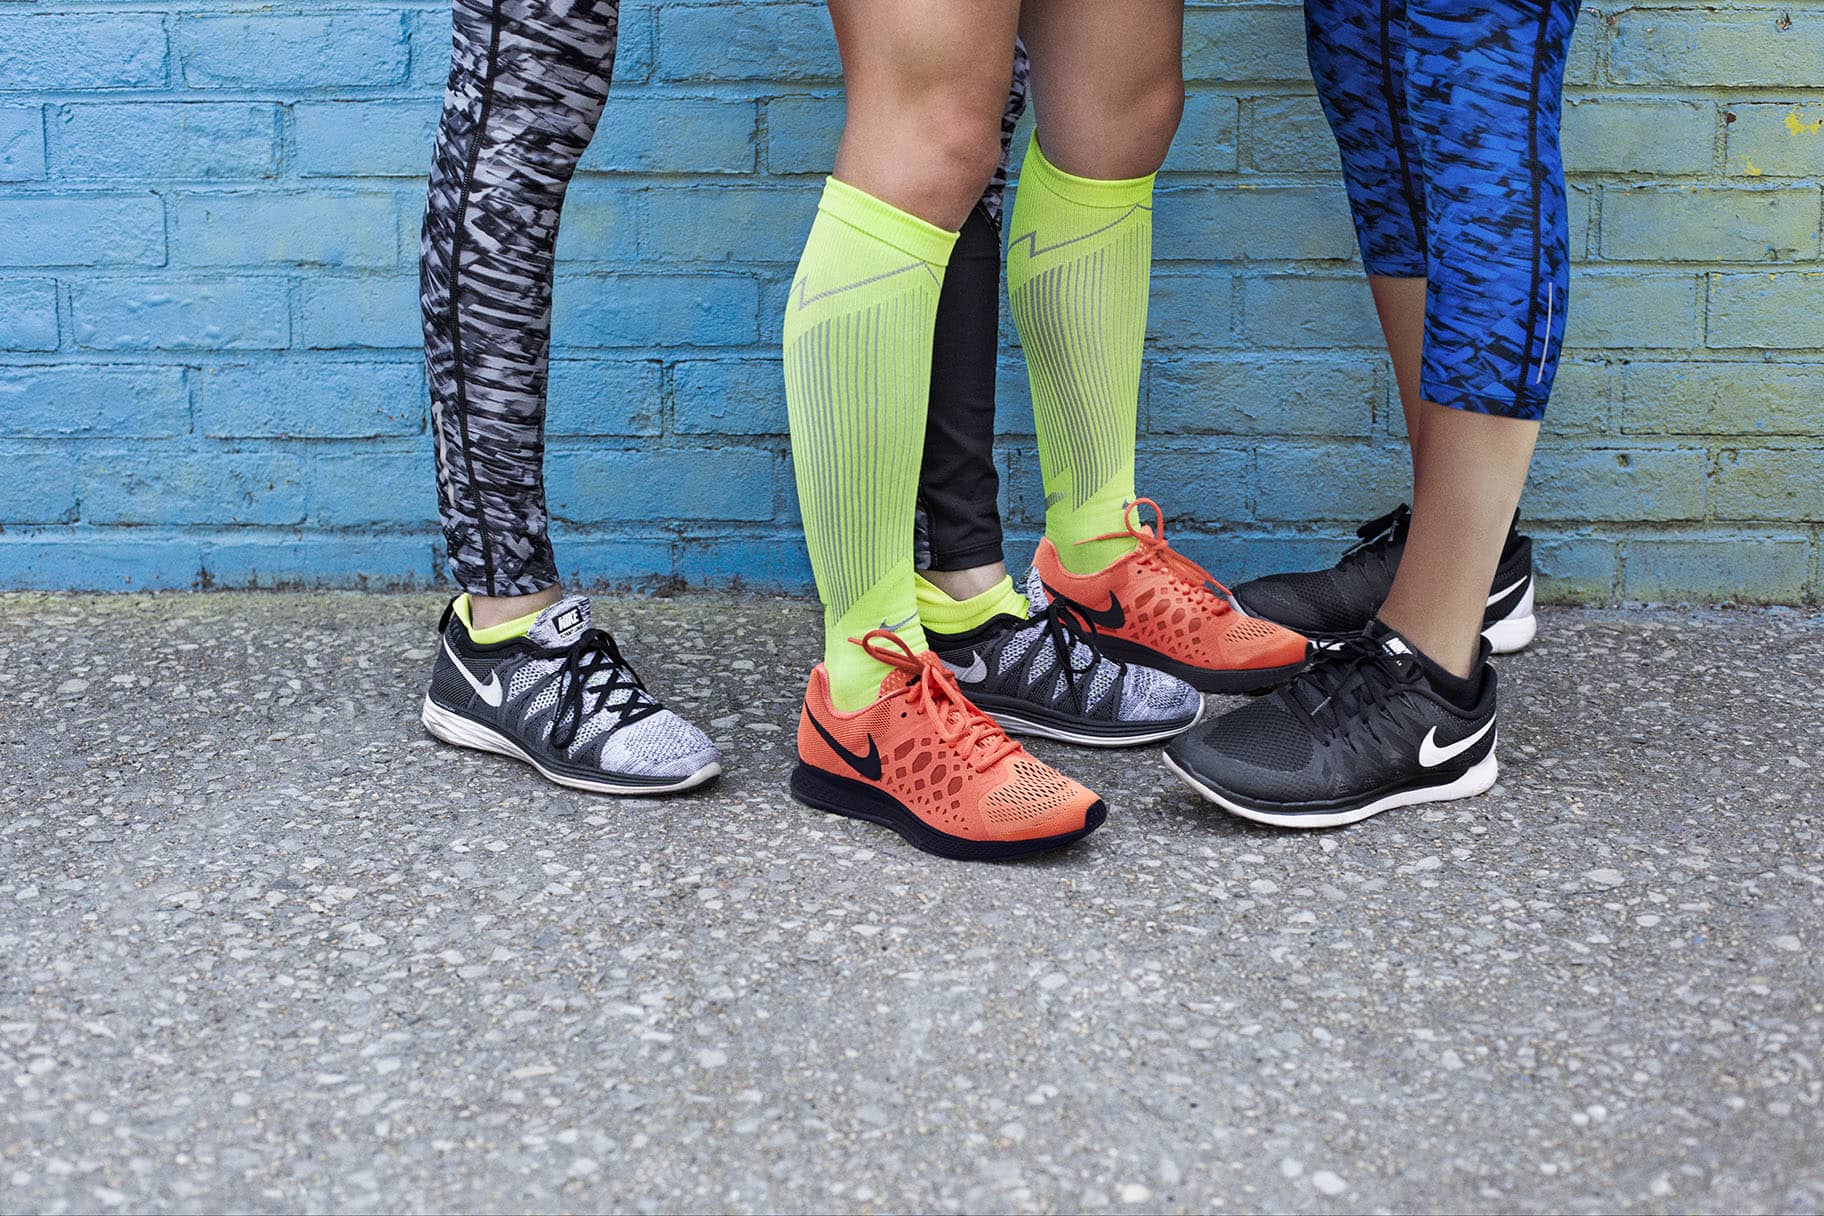 Comment choisir des chaussettes de compression adaptées au running